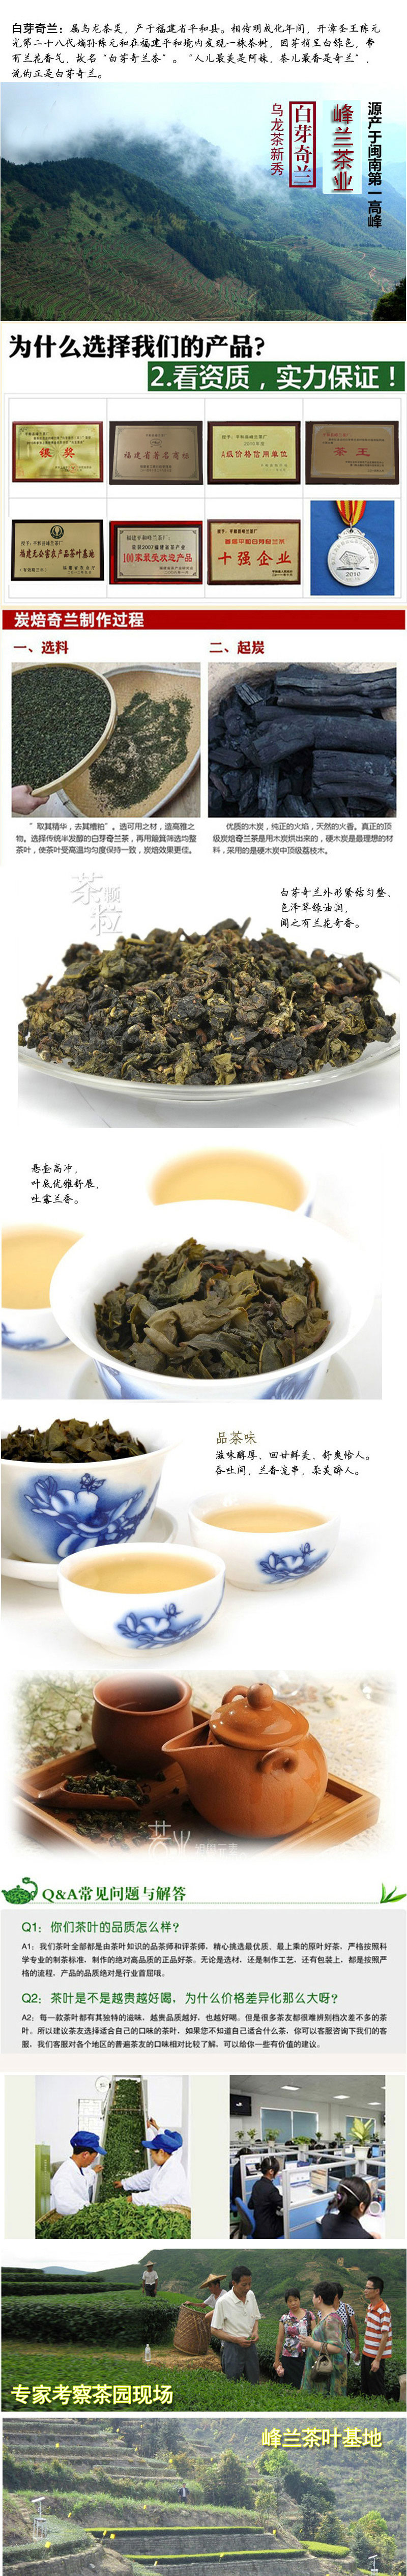 福建特产 礼盒装袋装乌龙茶有机天然白芽奇兰柚香型峰兰茶业